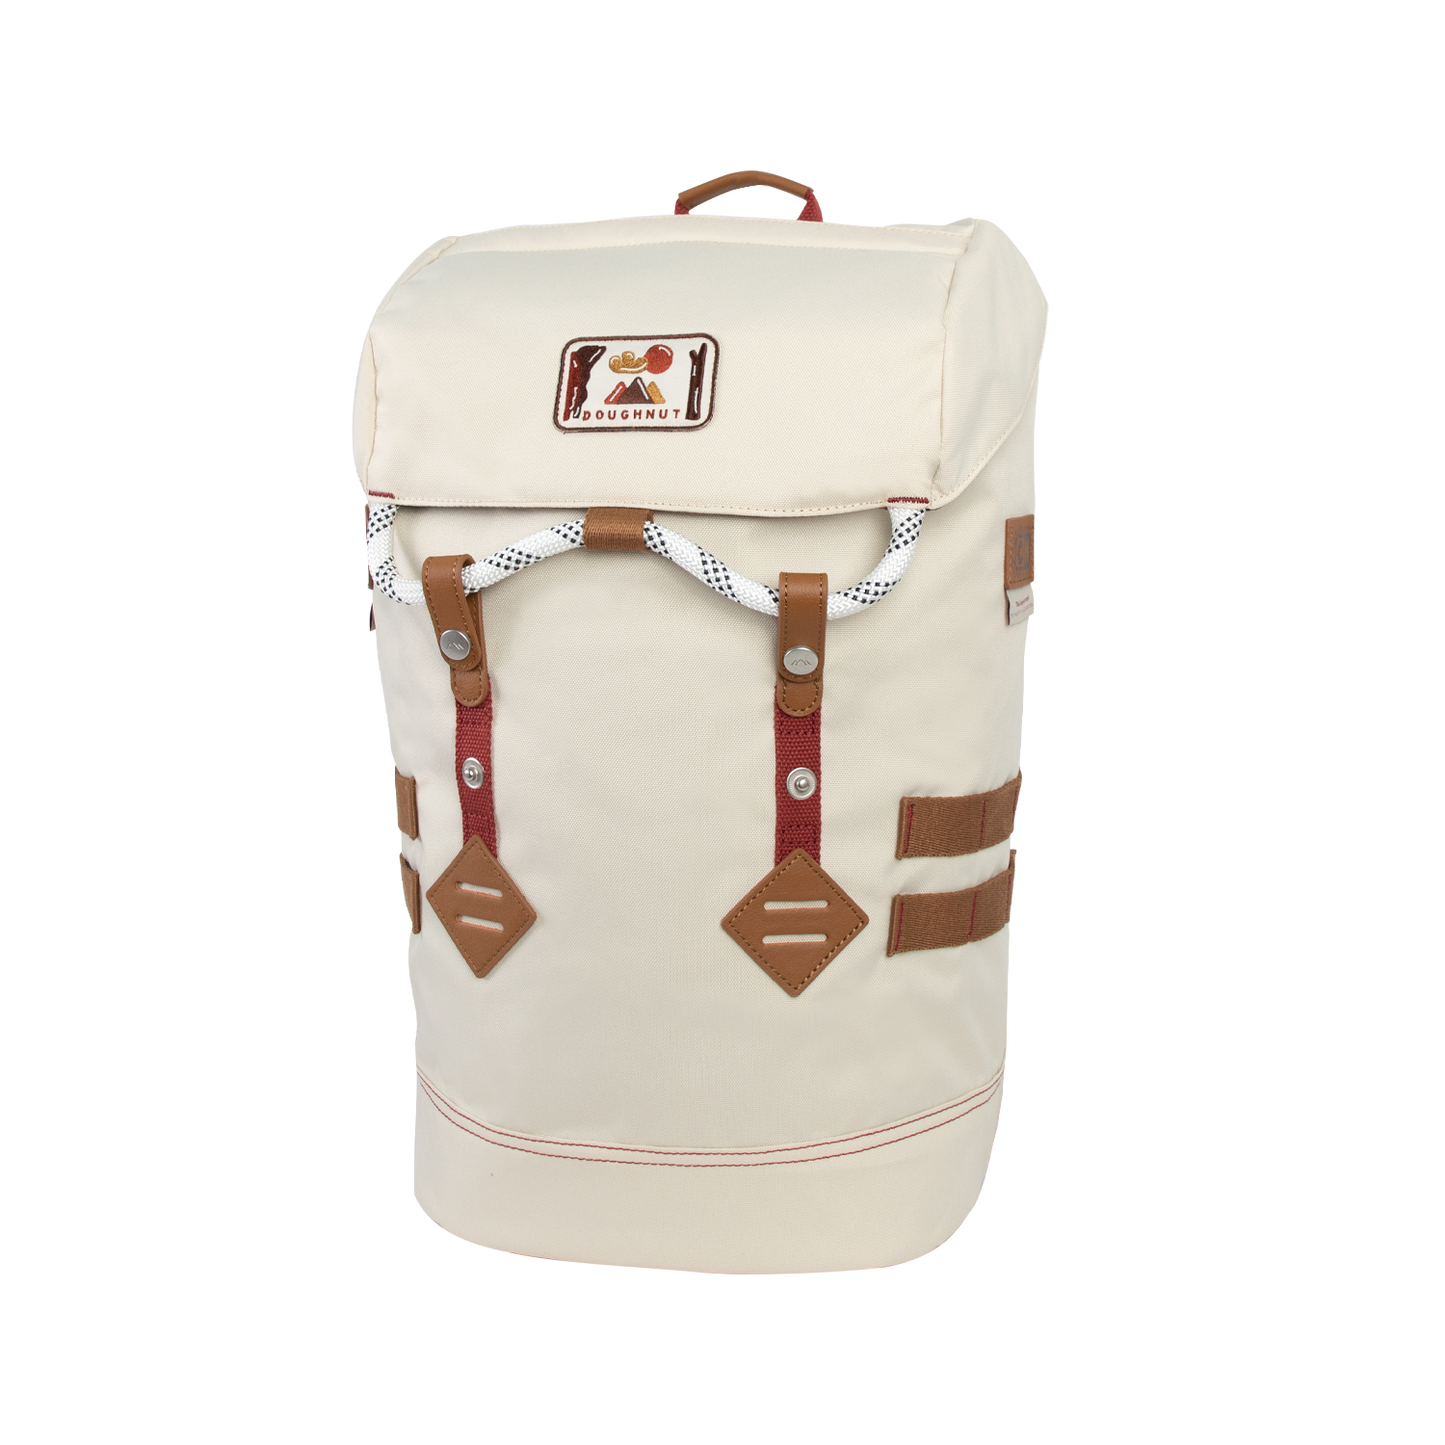 Colorado Dreamwalker Series Backpack